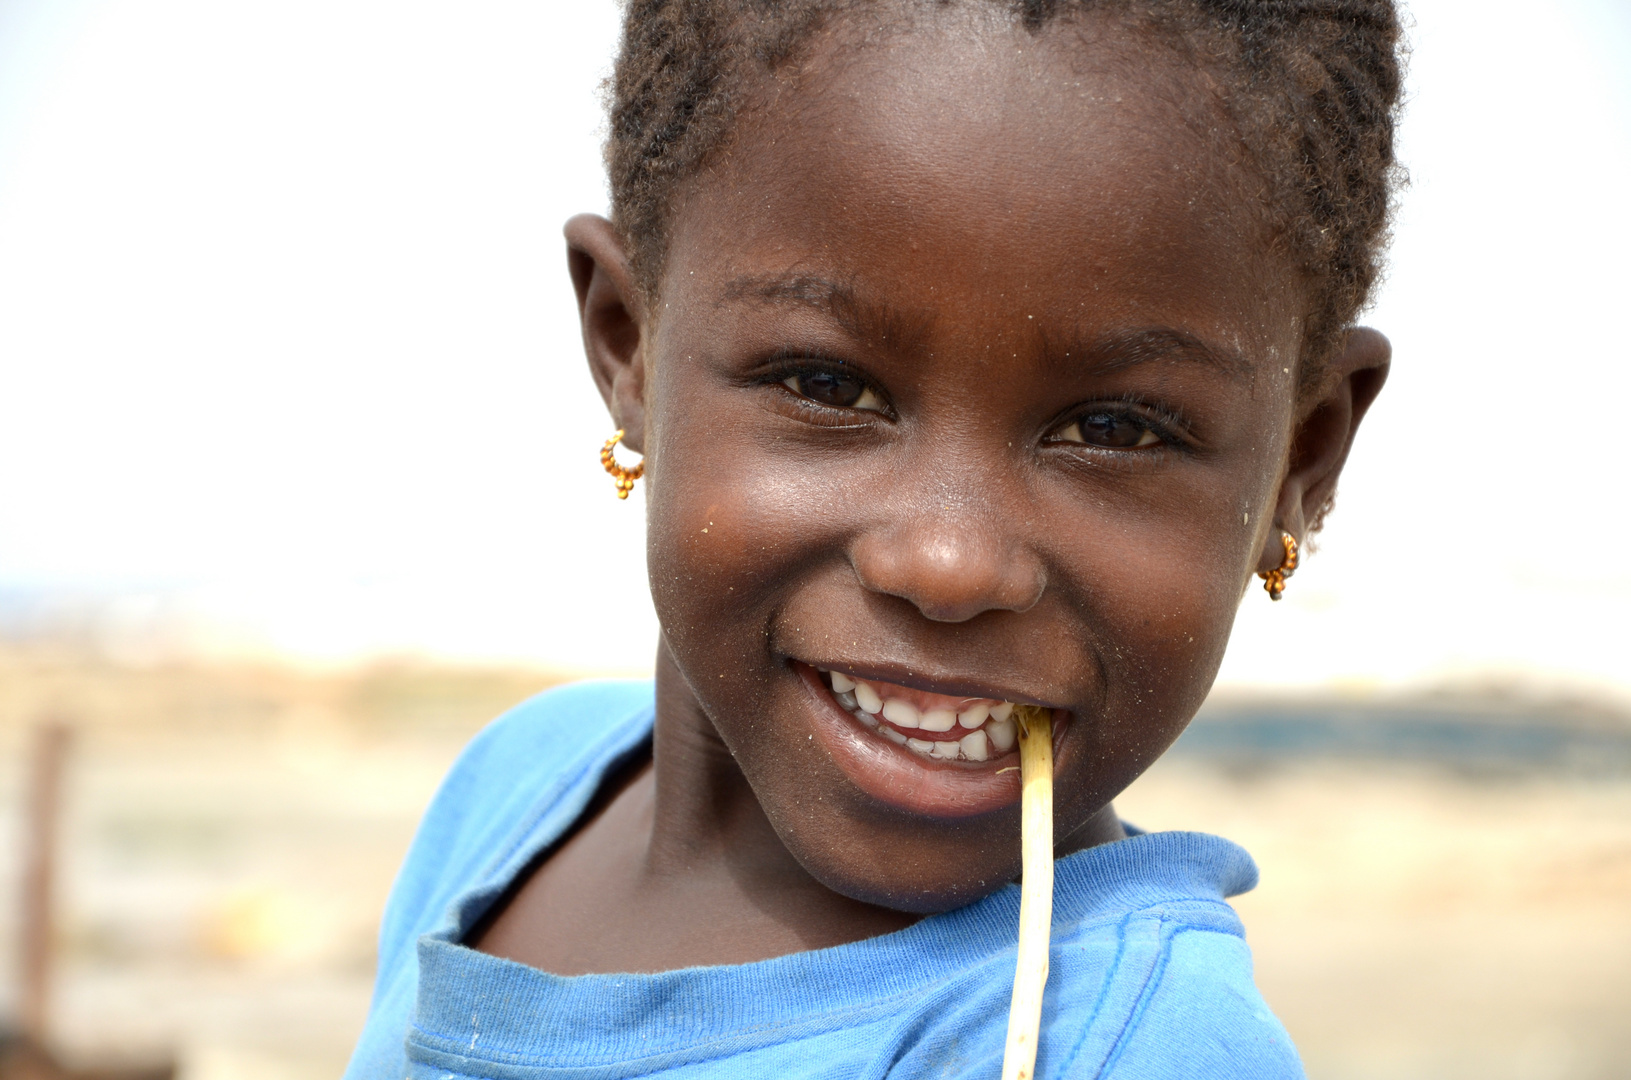 Girl at Lac Rose, Senegal